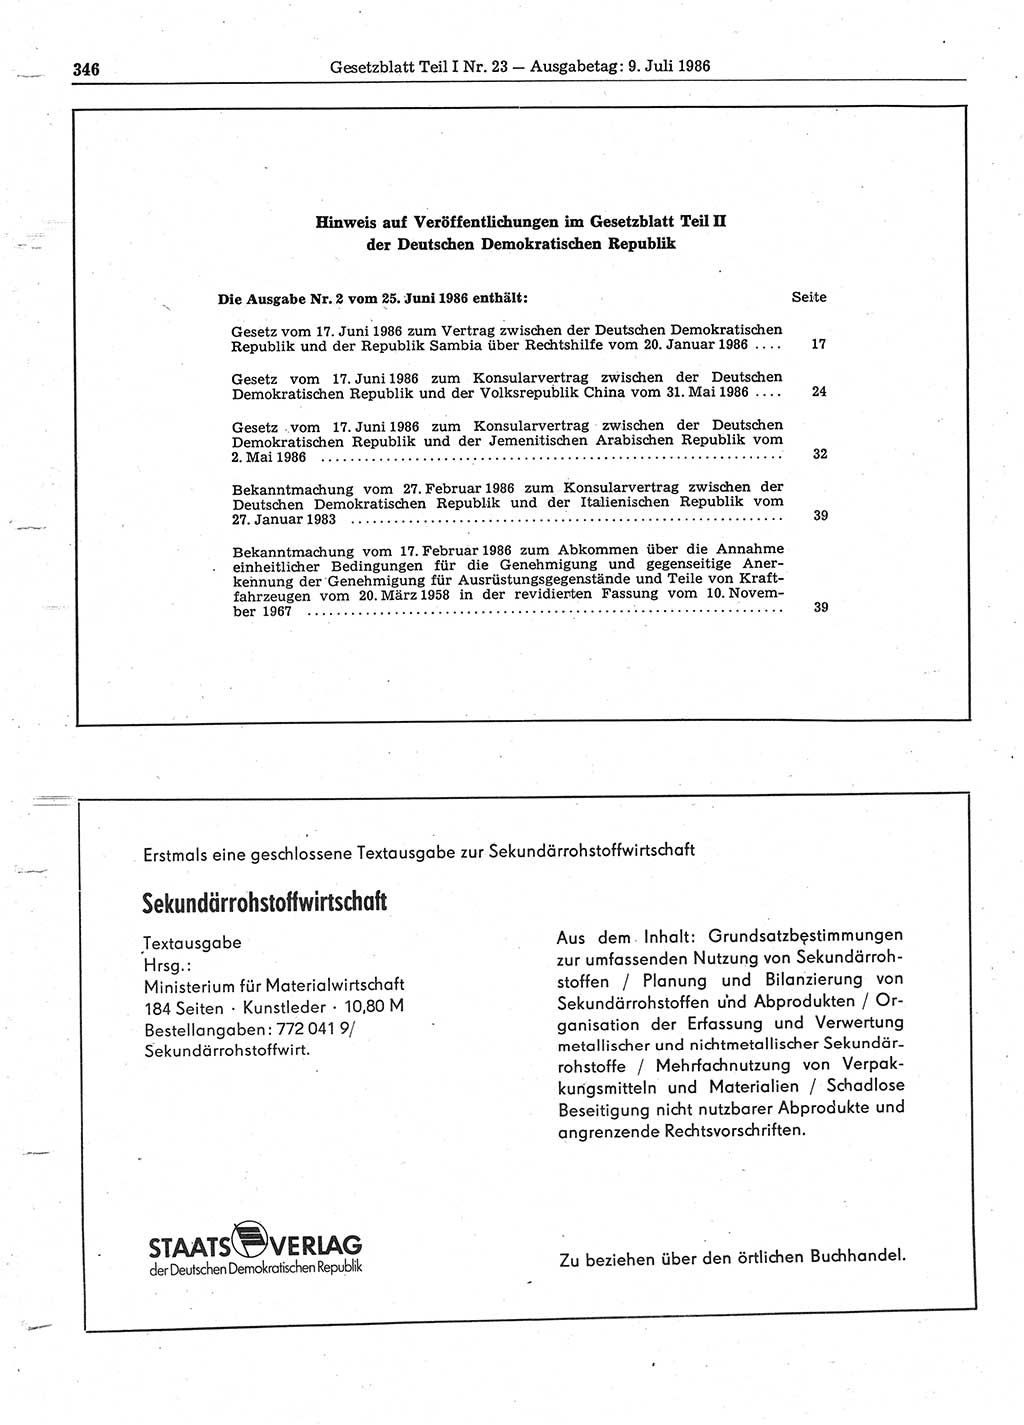 Gesetzblatt (GBl.) der Deutschen Demokratischen Republik (DDR) Teil Ⅰ 1986, Seite 346 (GBl. DDR Ⅰ 1986, S. 346)